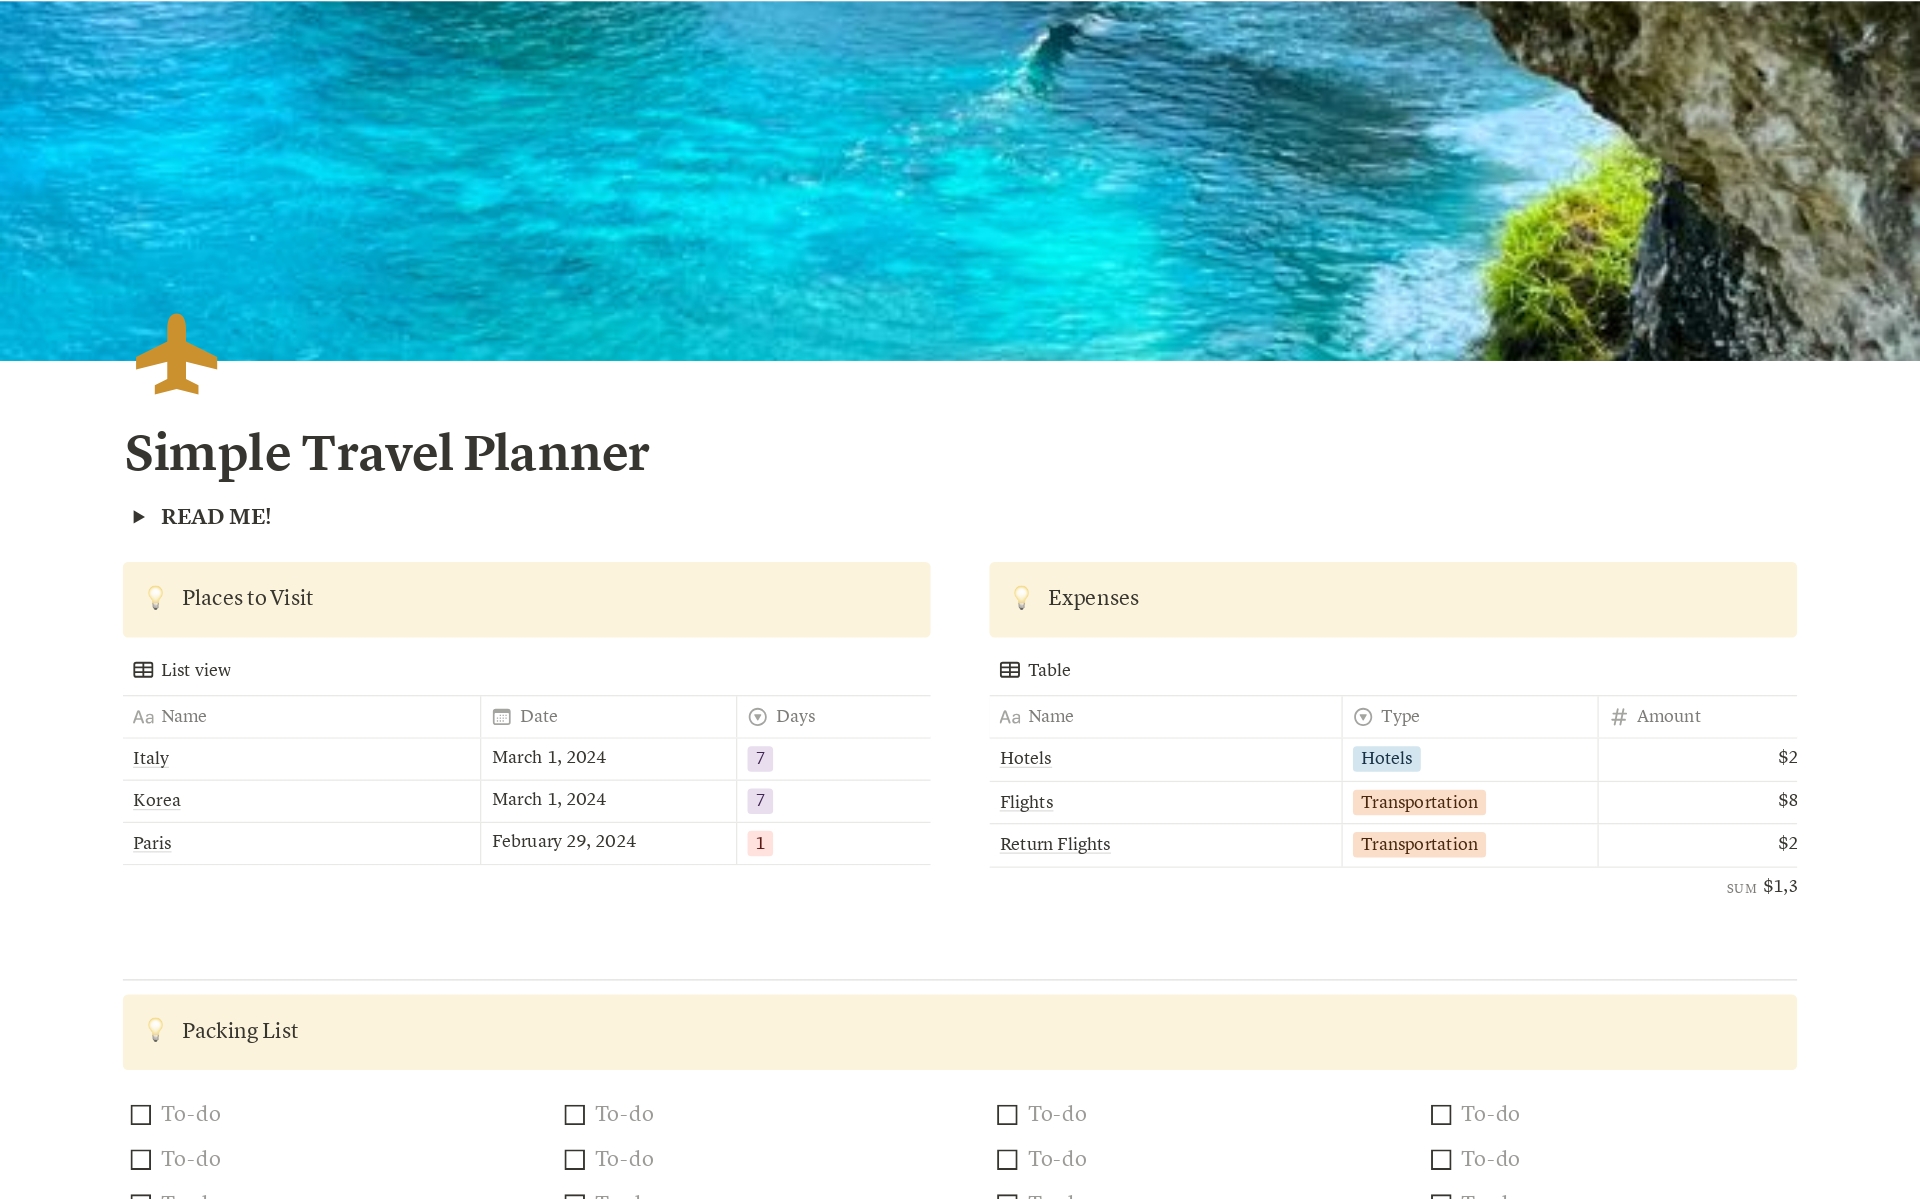 Uma prévia do modelo para Travel Planner